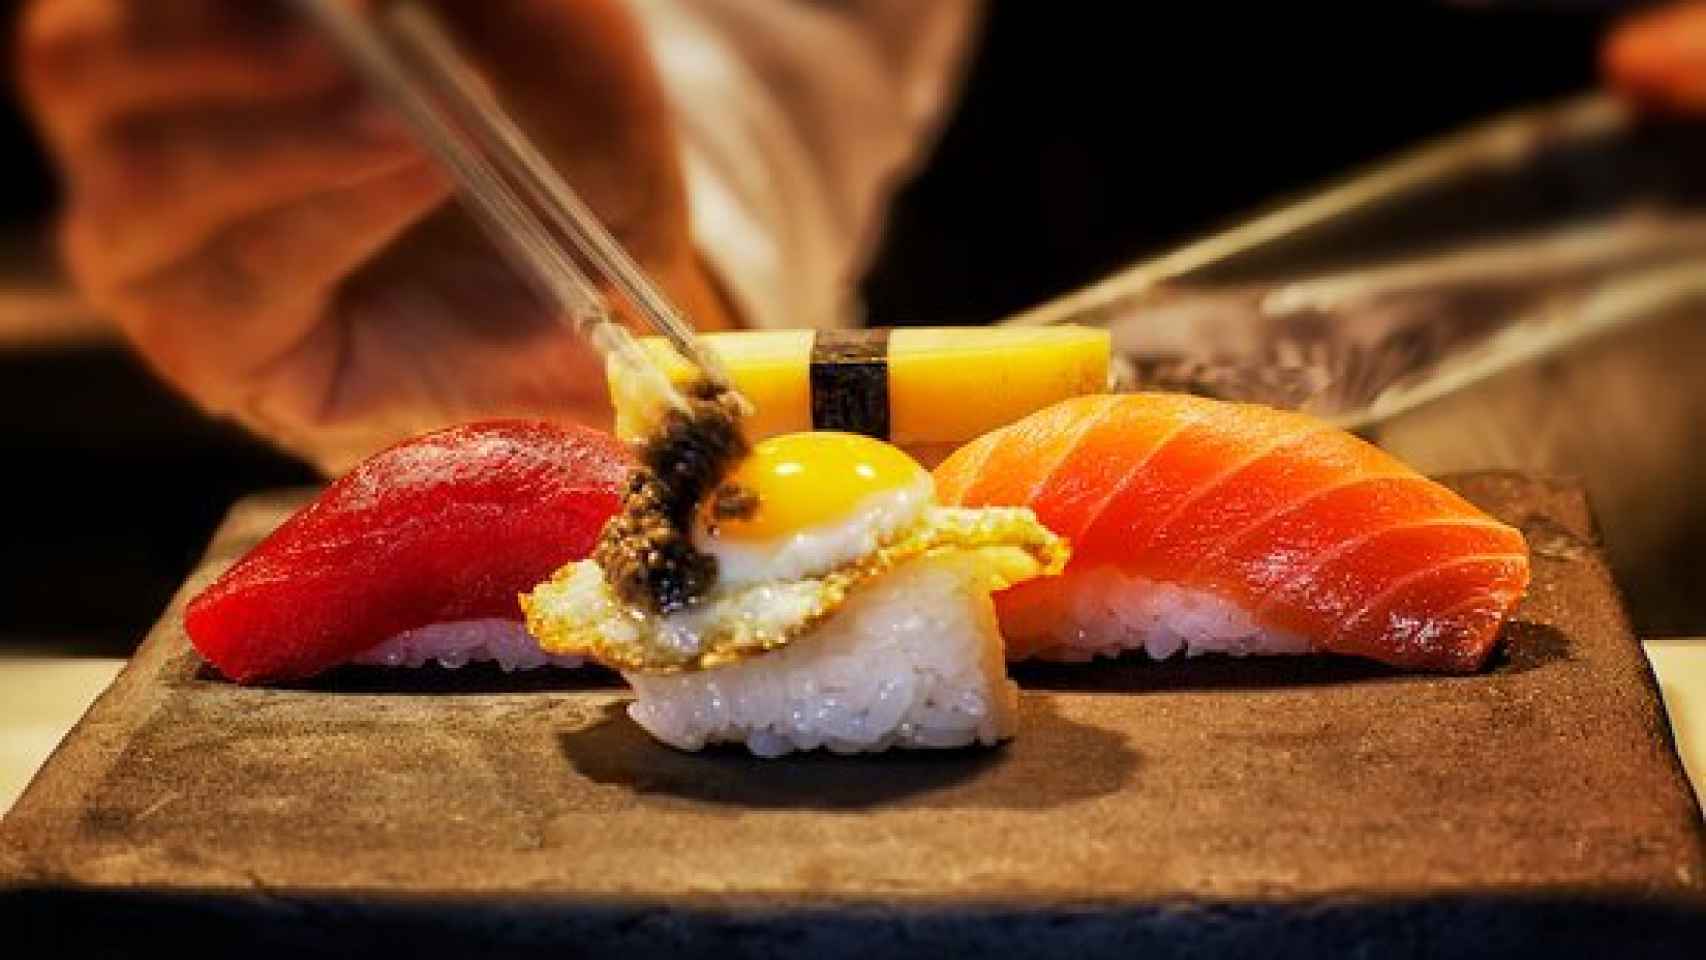 Los mejores sitios para comer sushi en Madrid